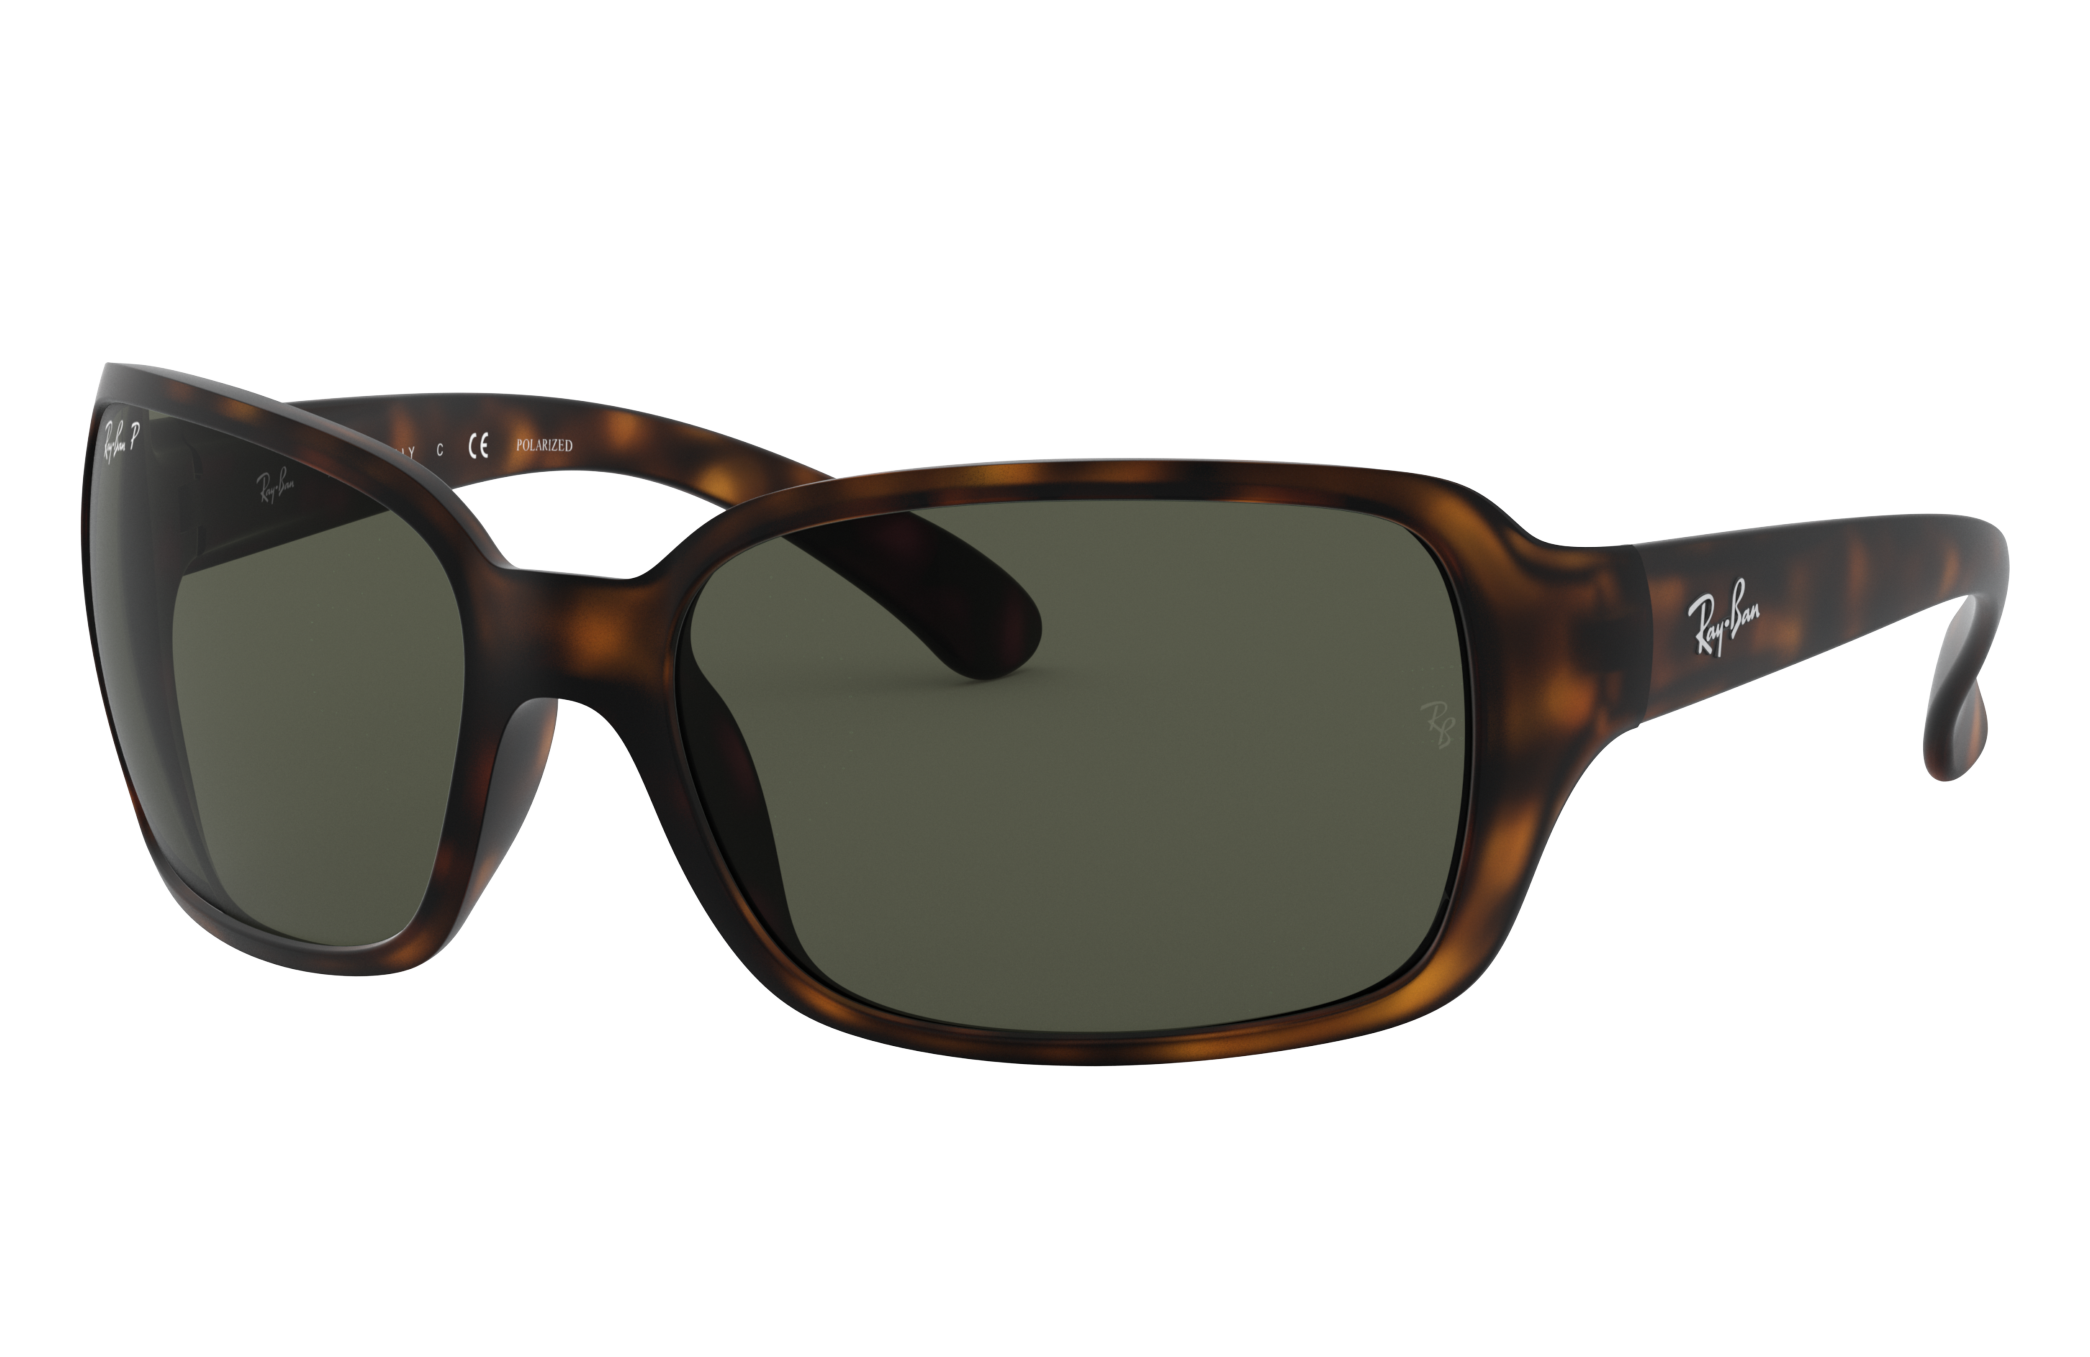 rb4068 sunglasses